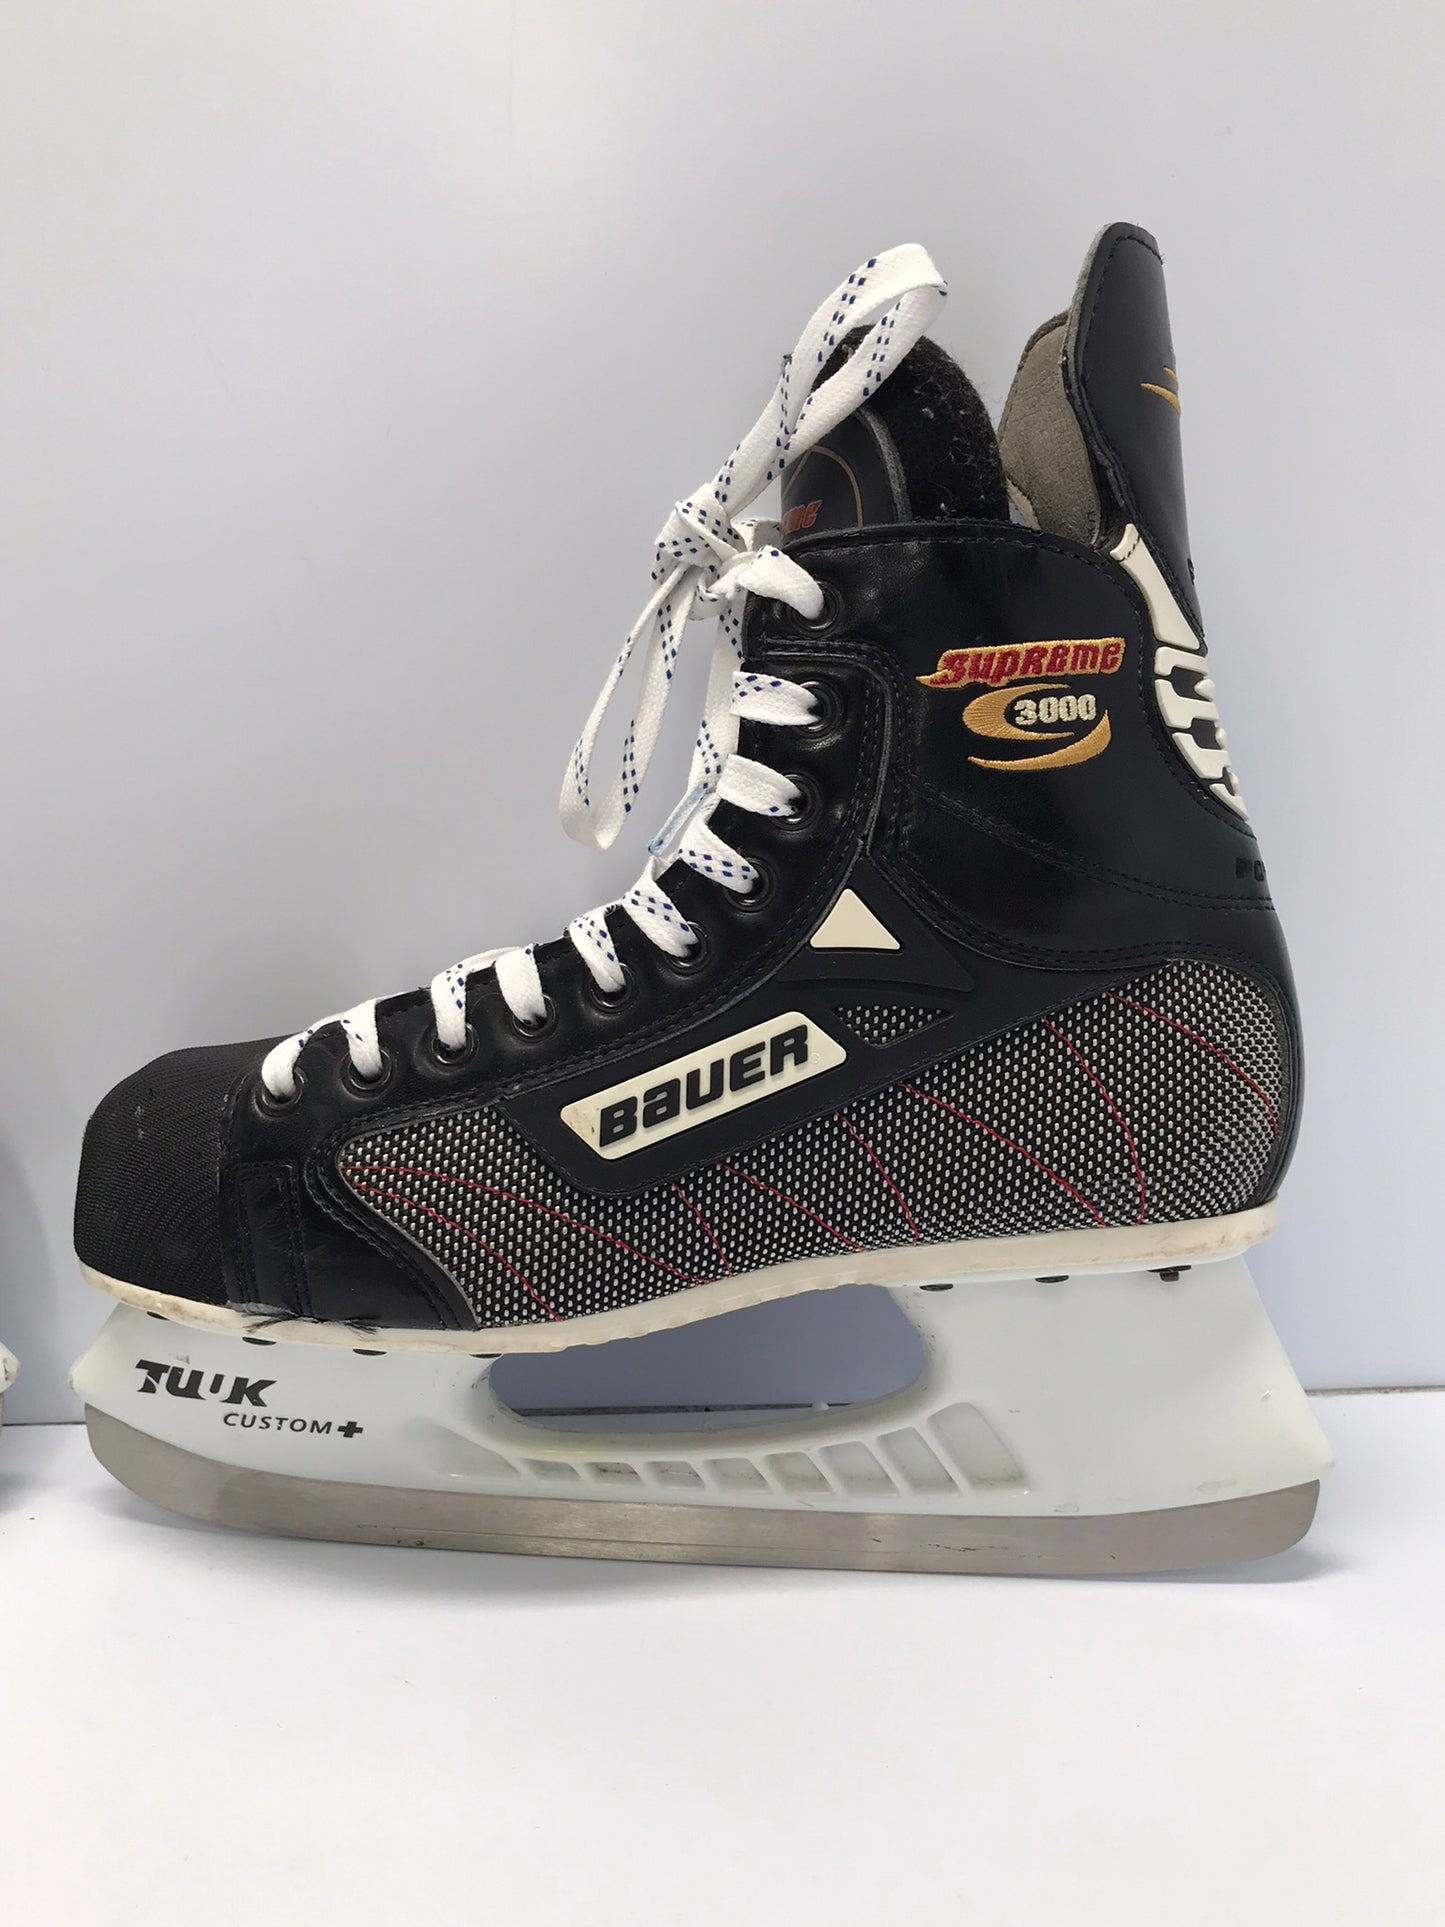 Hockey Skates Men's Shoe Size 7 Skate Size 6 Bauer Supreme 3000 Excellent